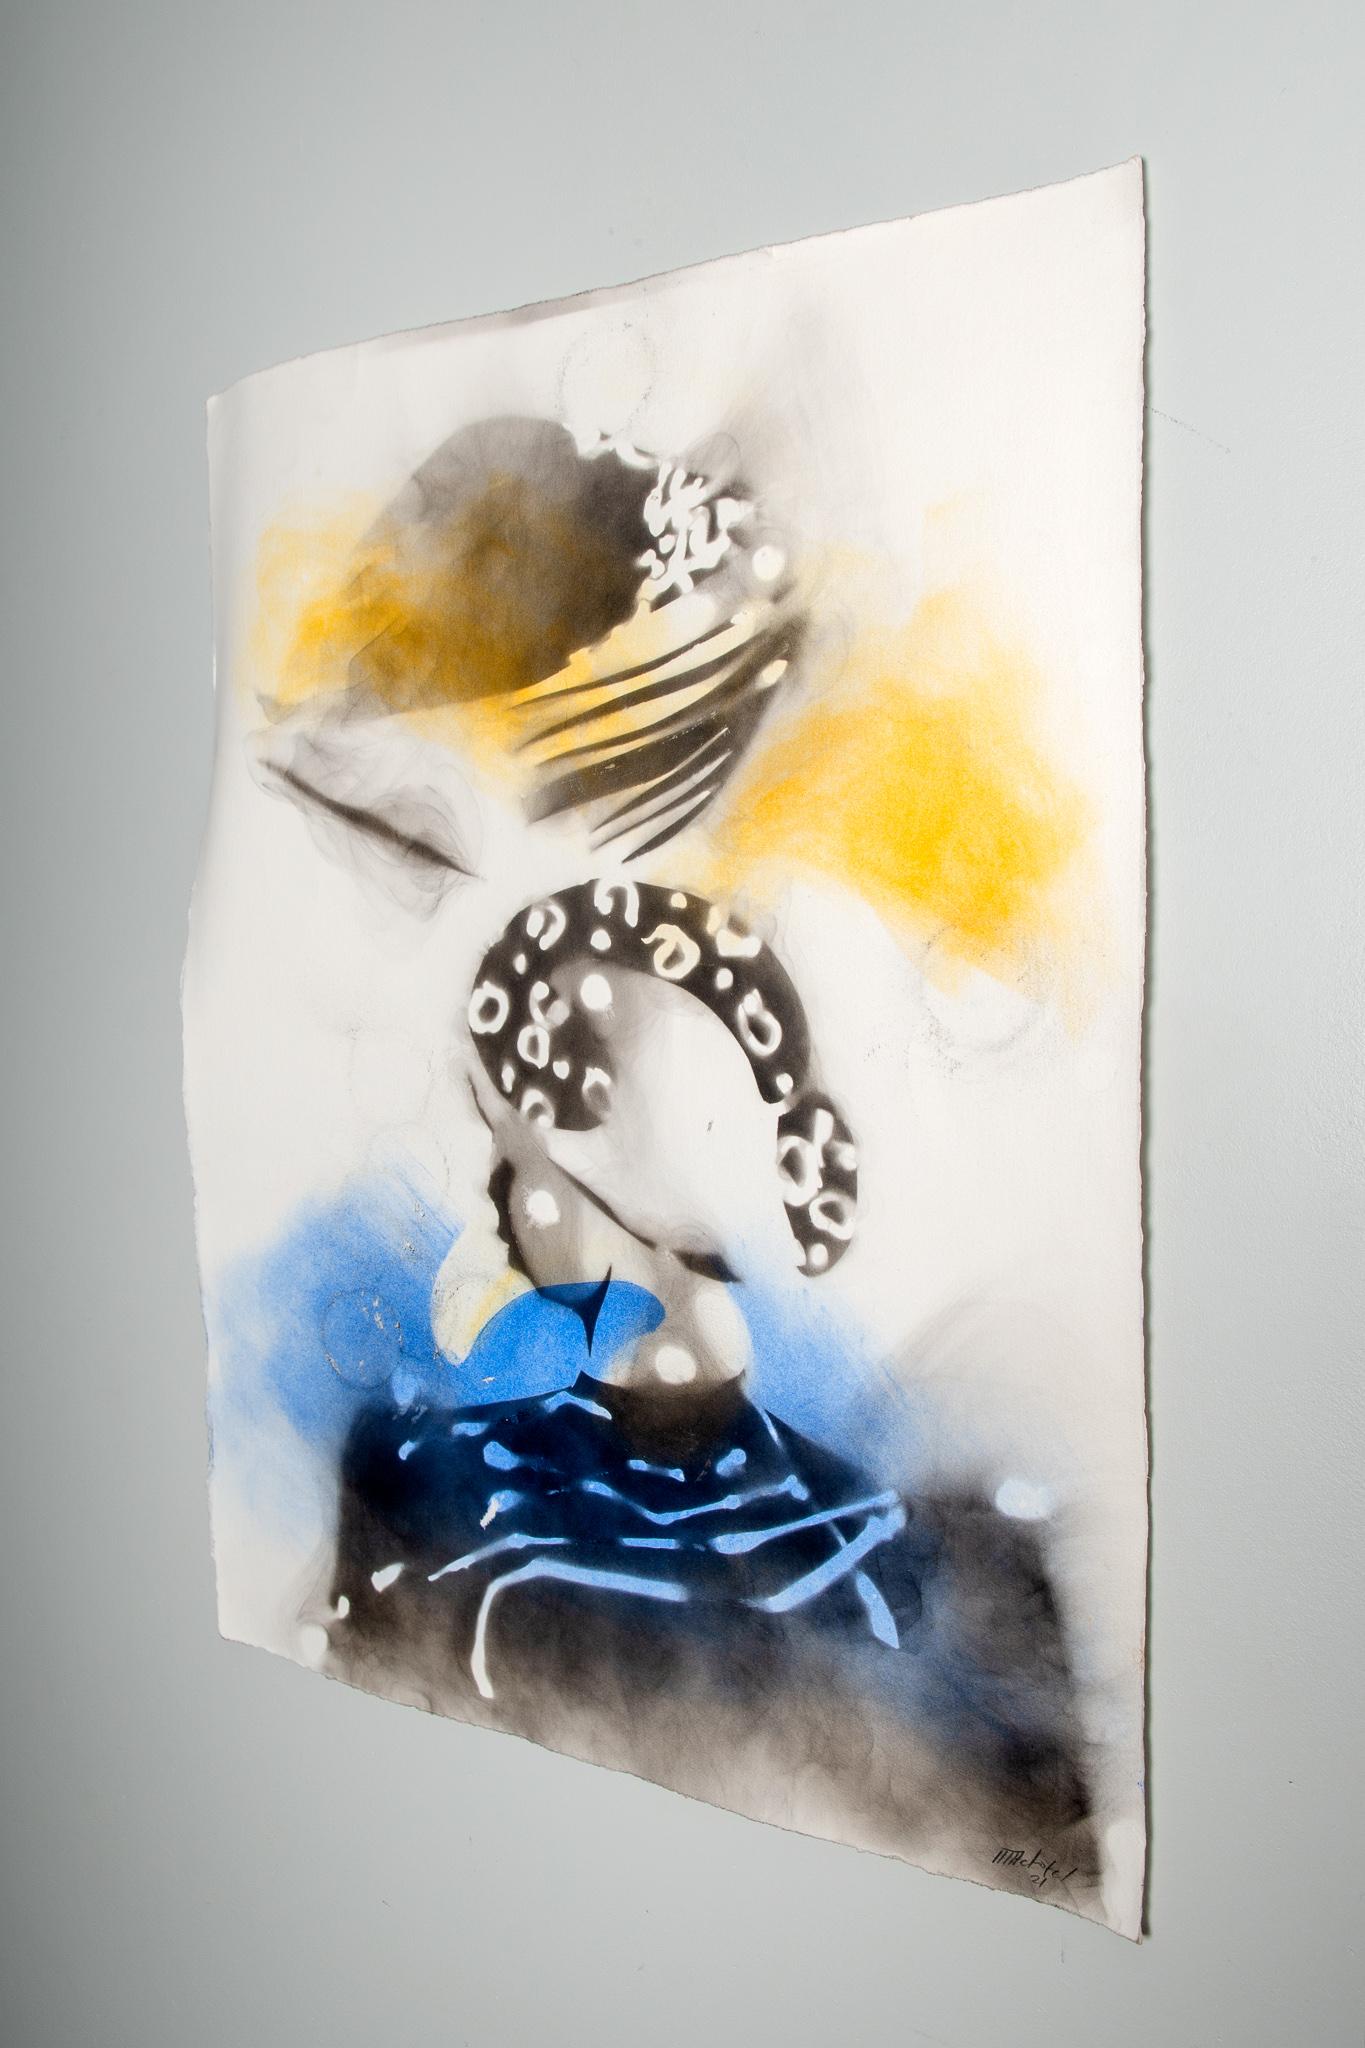 I heard culture, Actofel Ilovu, Smoke and pastel on fabriano paper - Gray Figurative Print by Actofel Ilovu 